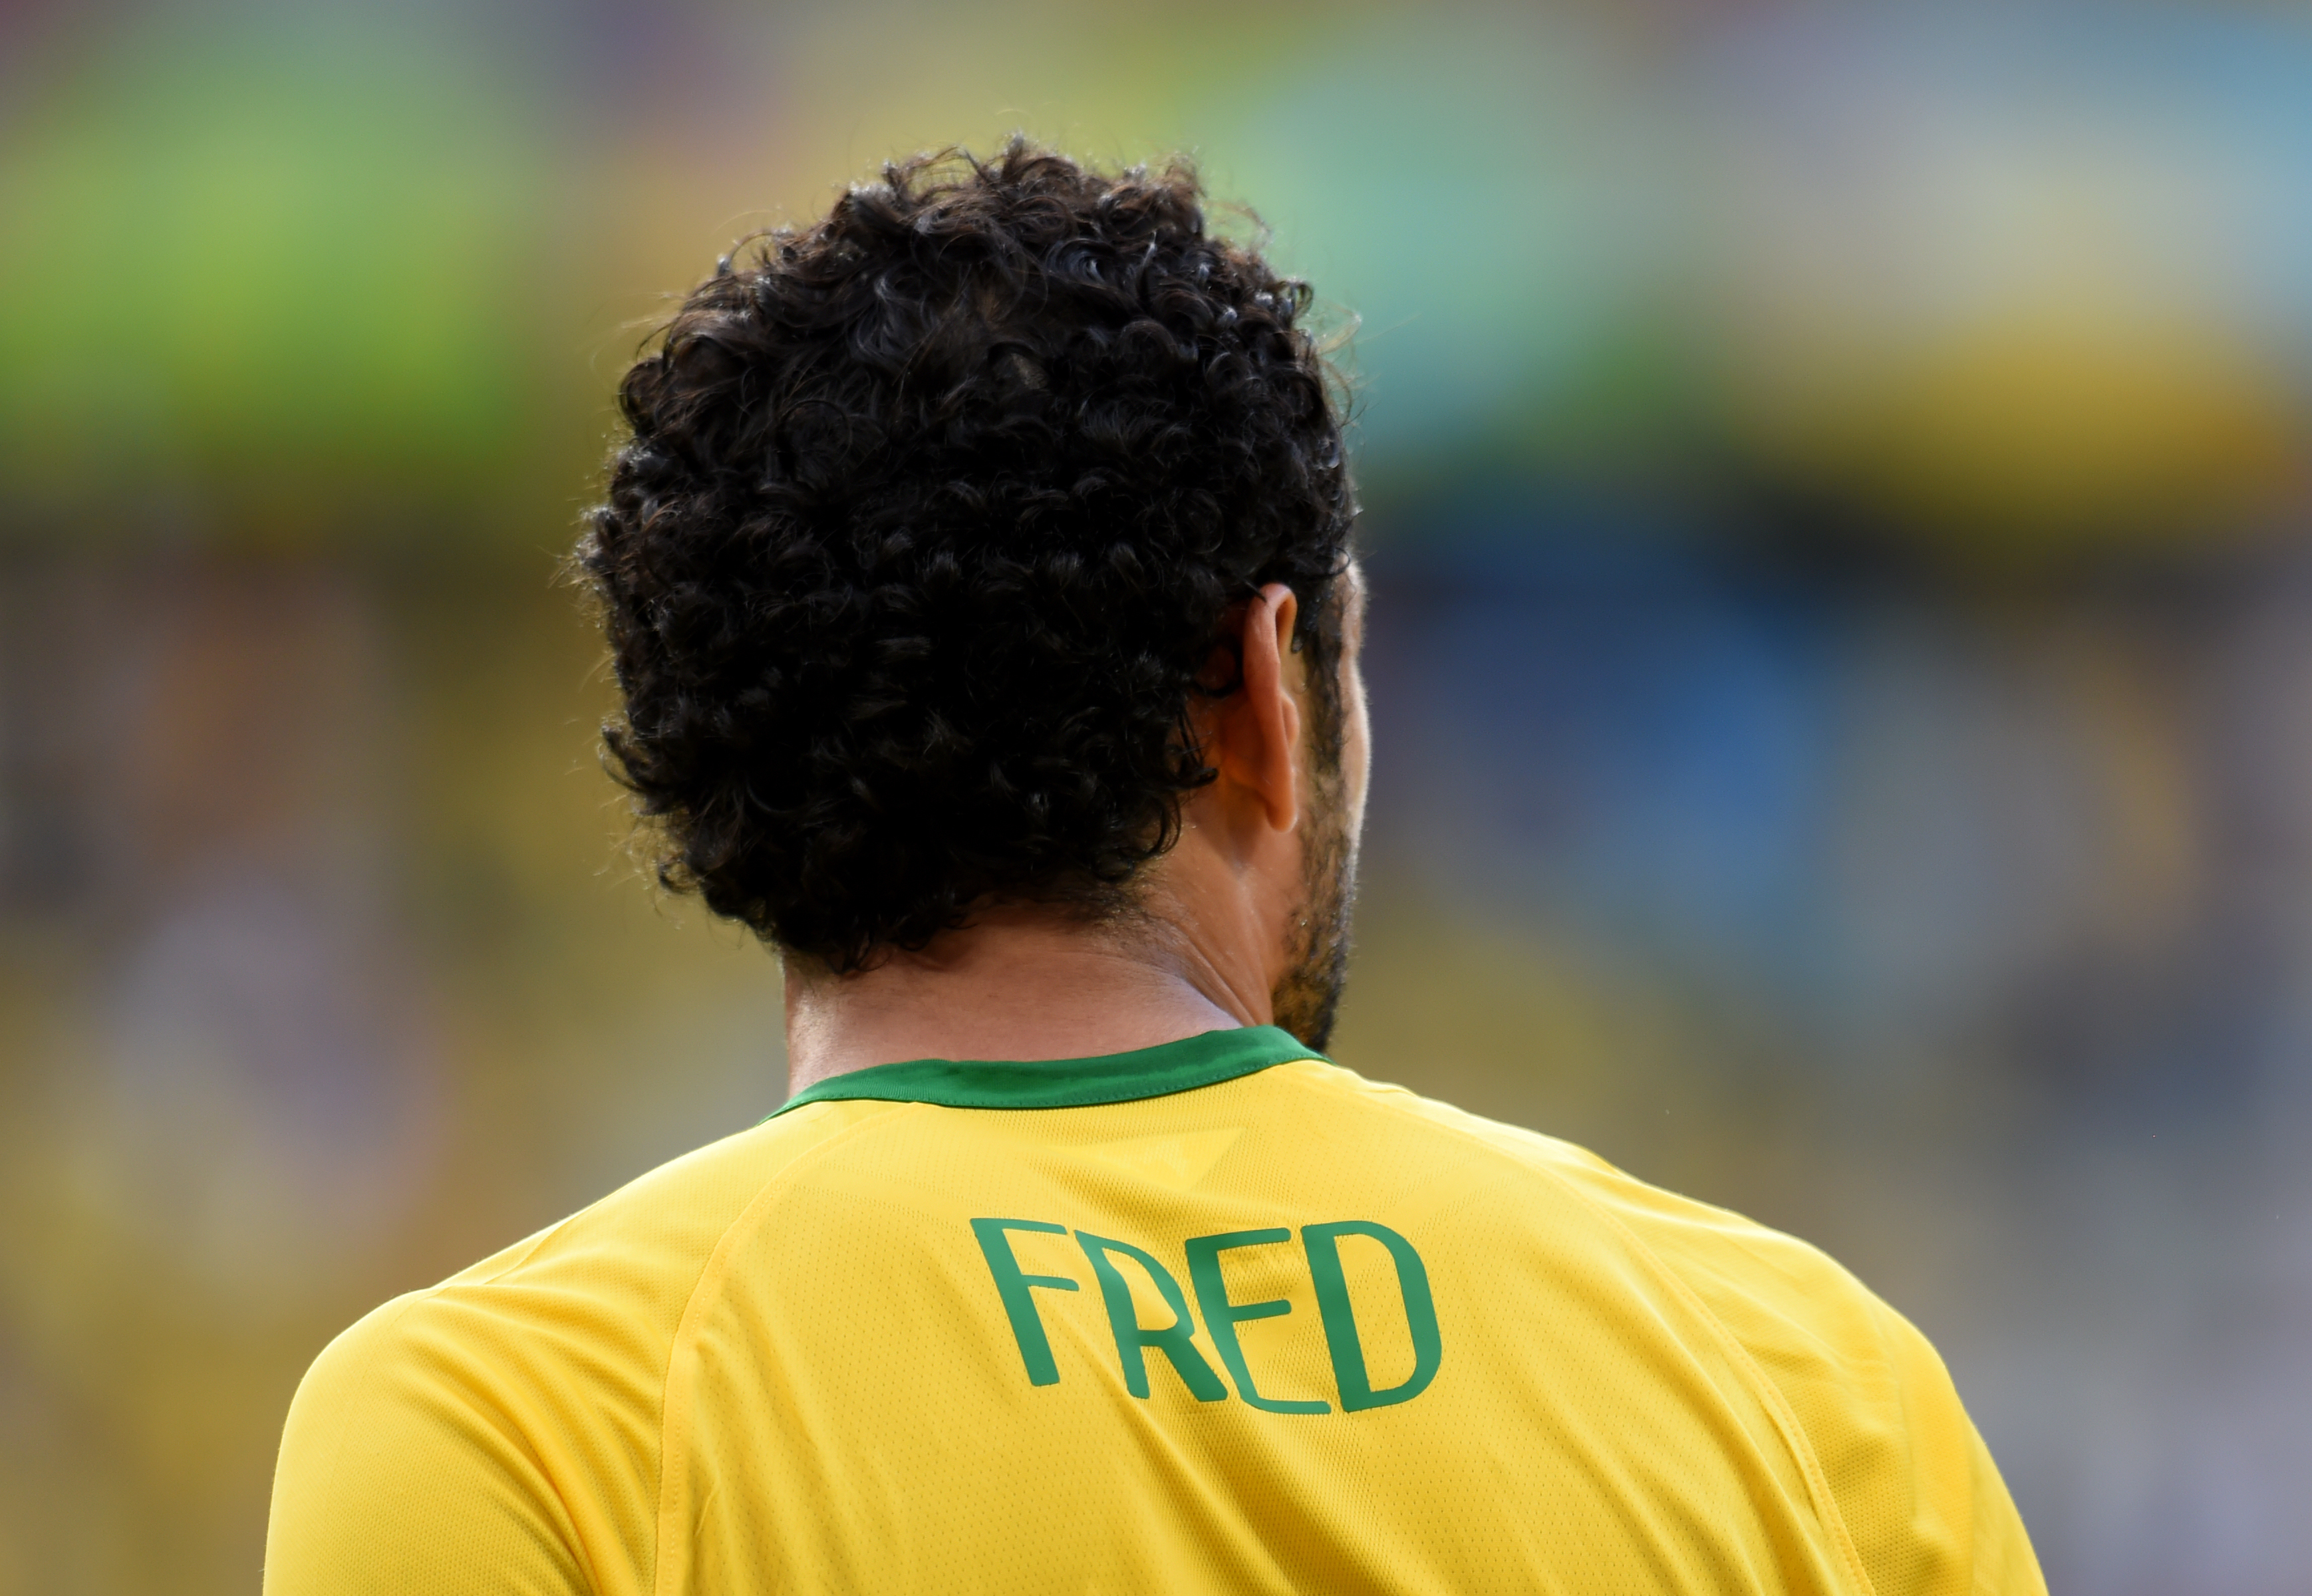 Brazil footballer Fred